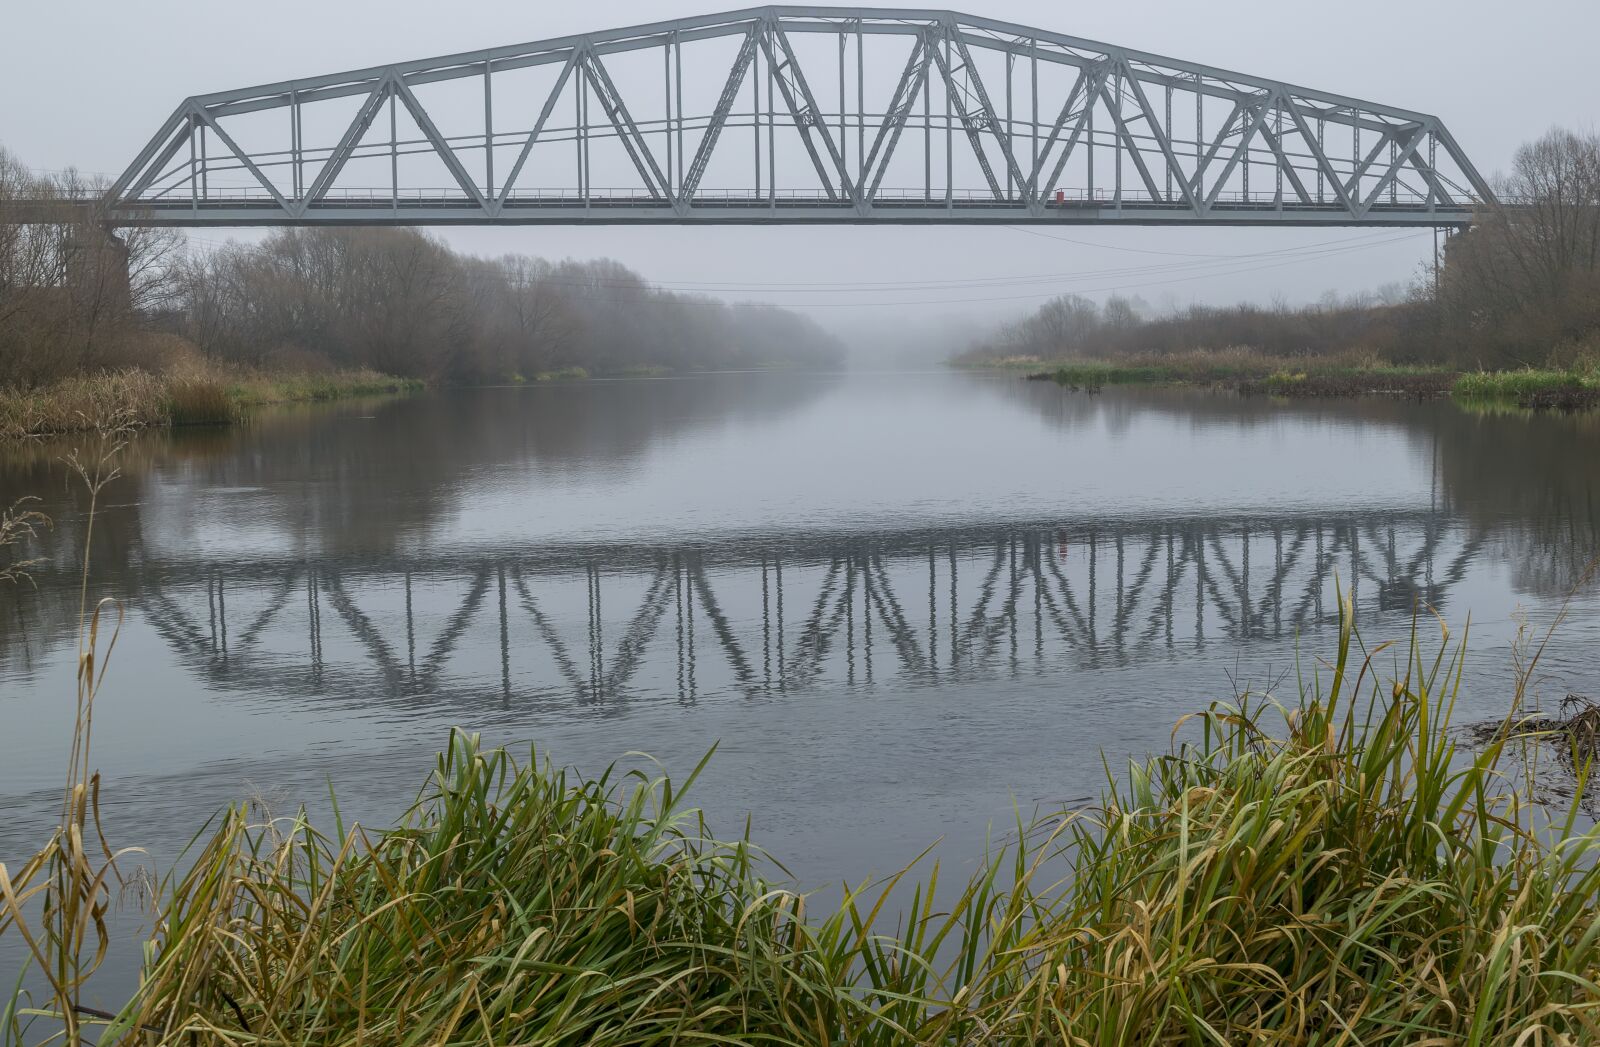 Nikon D3300 sample photo. Bridge, river, landscape photography